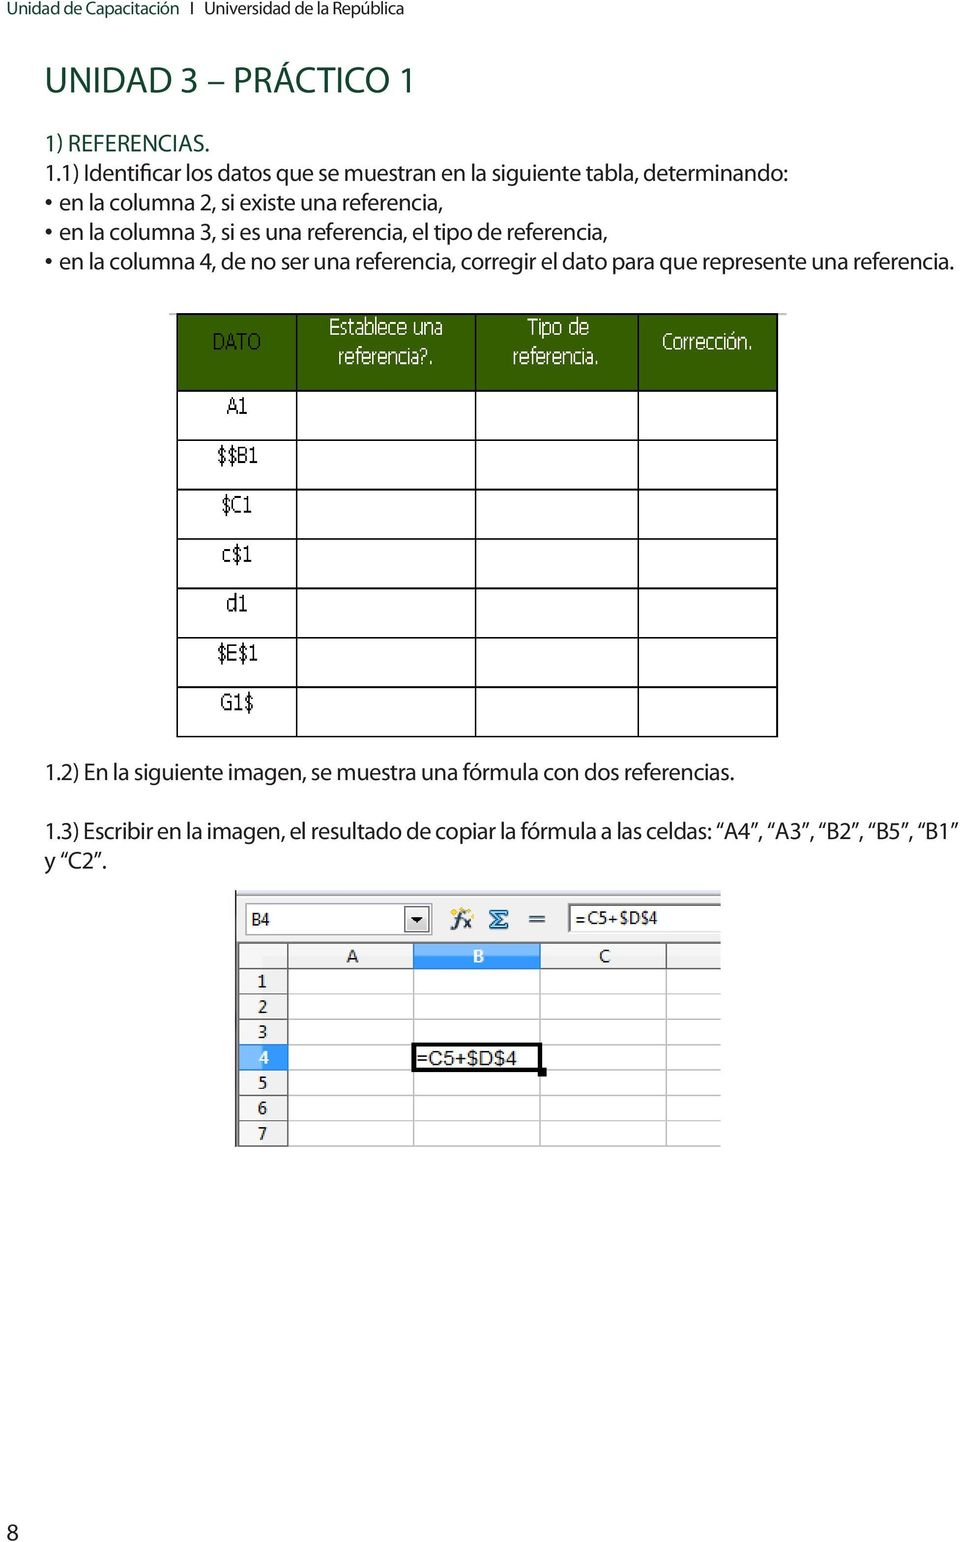 1) Identificar los datos que se muestran en la siguiente tabla, determinando: en la columna 2, si existe una referencia, en la columna